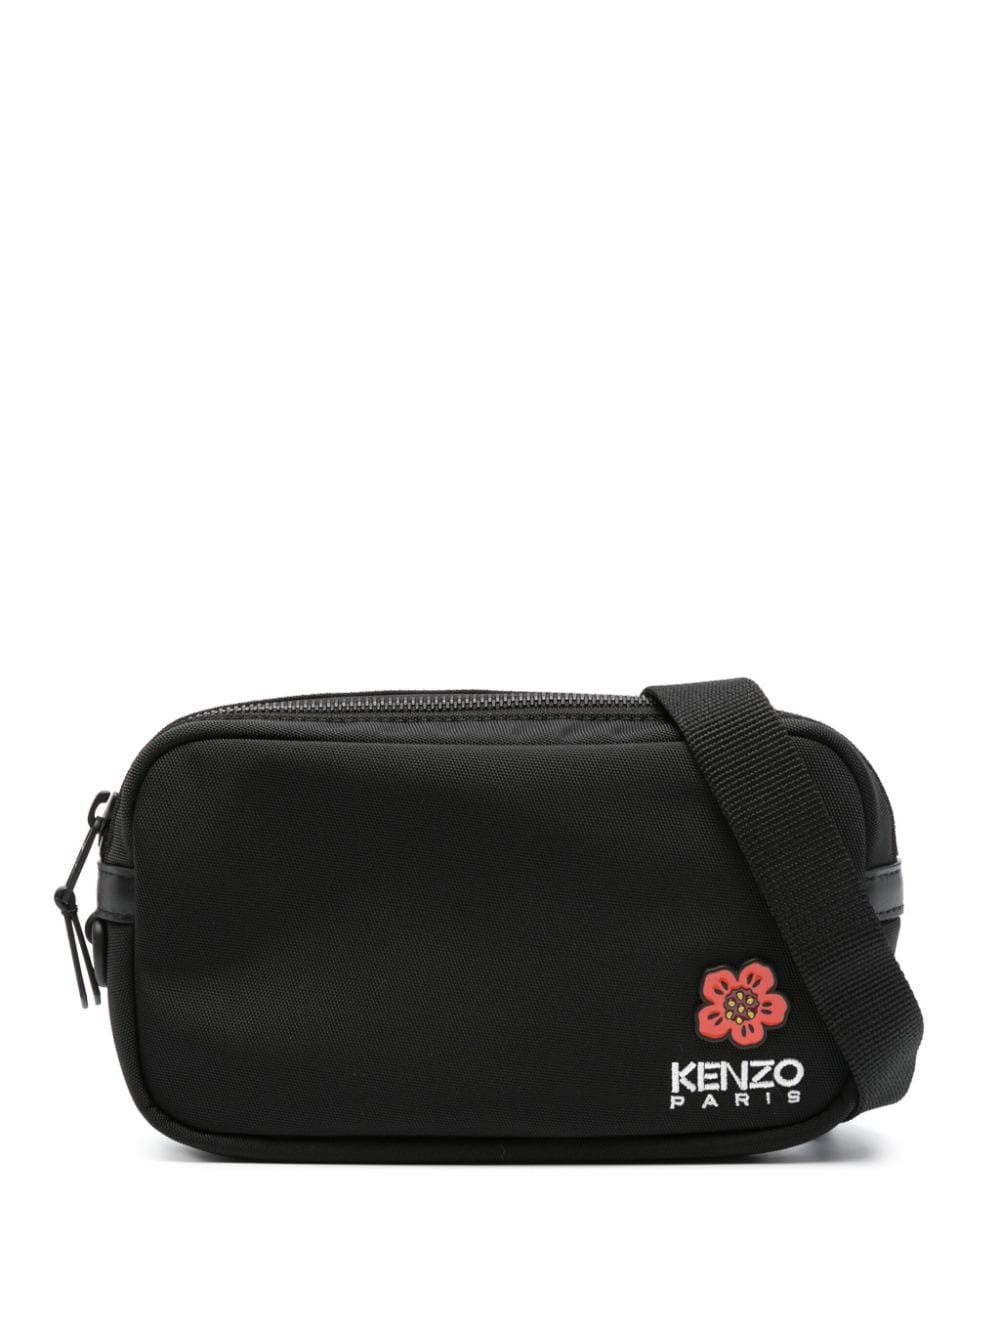 Kenzo Crest Belt Bag In Black